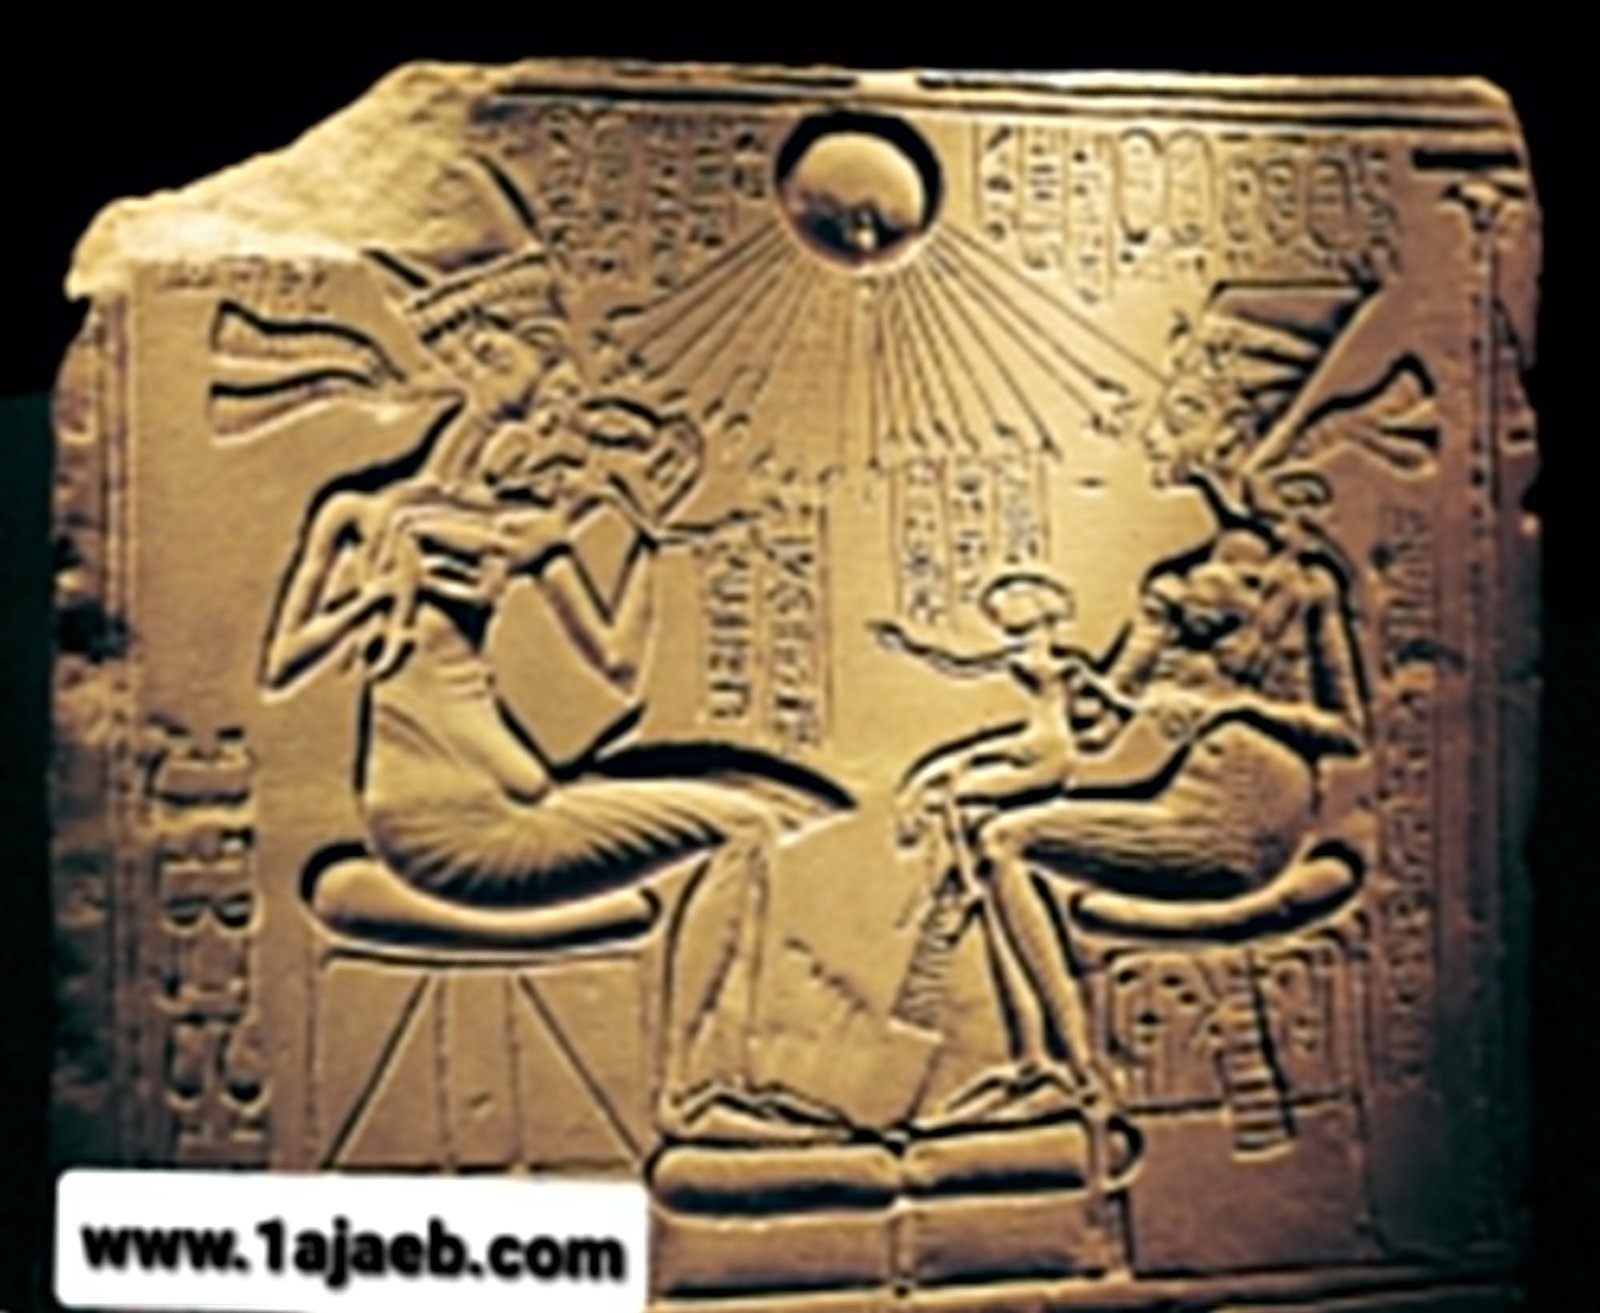 2 5 - اكتشاف "مدينة الأقصر الذهبية المفقودة" من قبل علماء الآثار في مصر